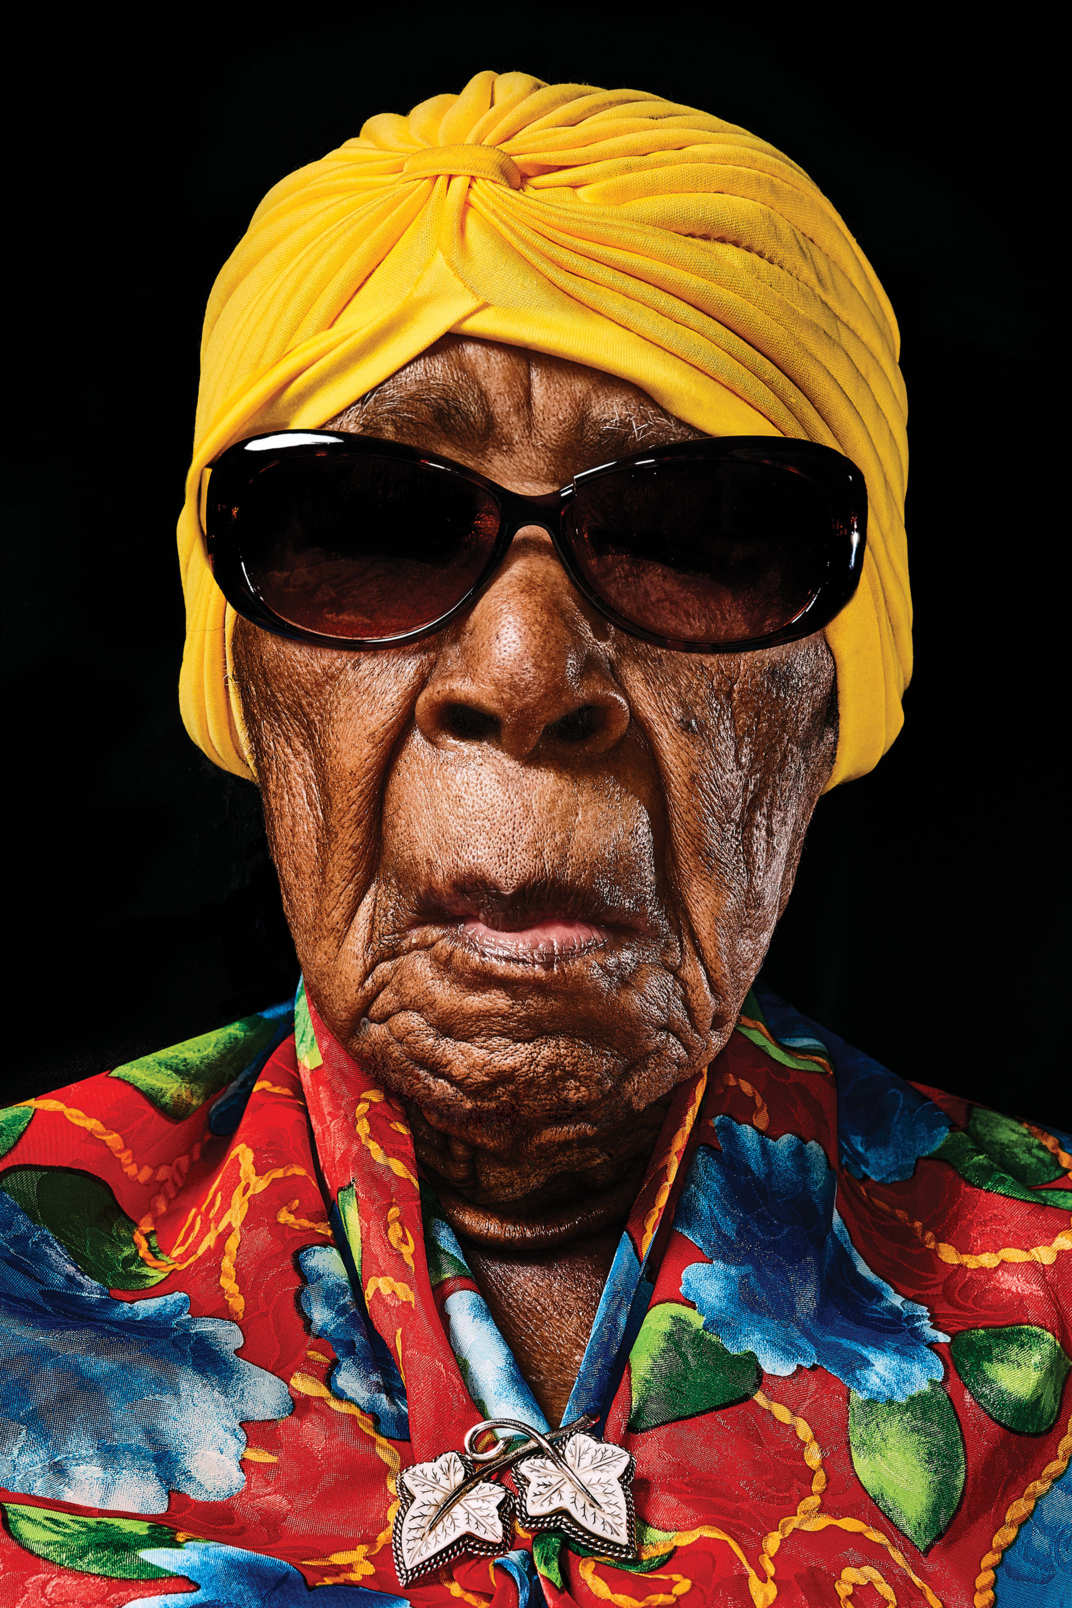 109 წლის ქალი, ხანგრძლივ ცხოვრებას კაცებისგან თავის შორის დაჭერას უკავშირებს